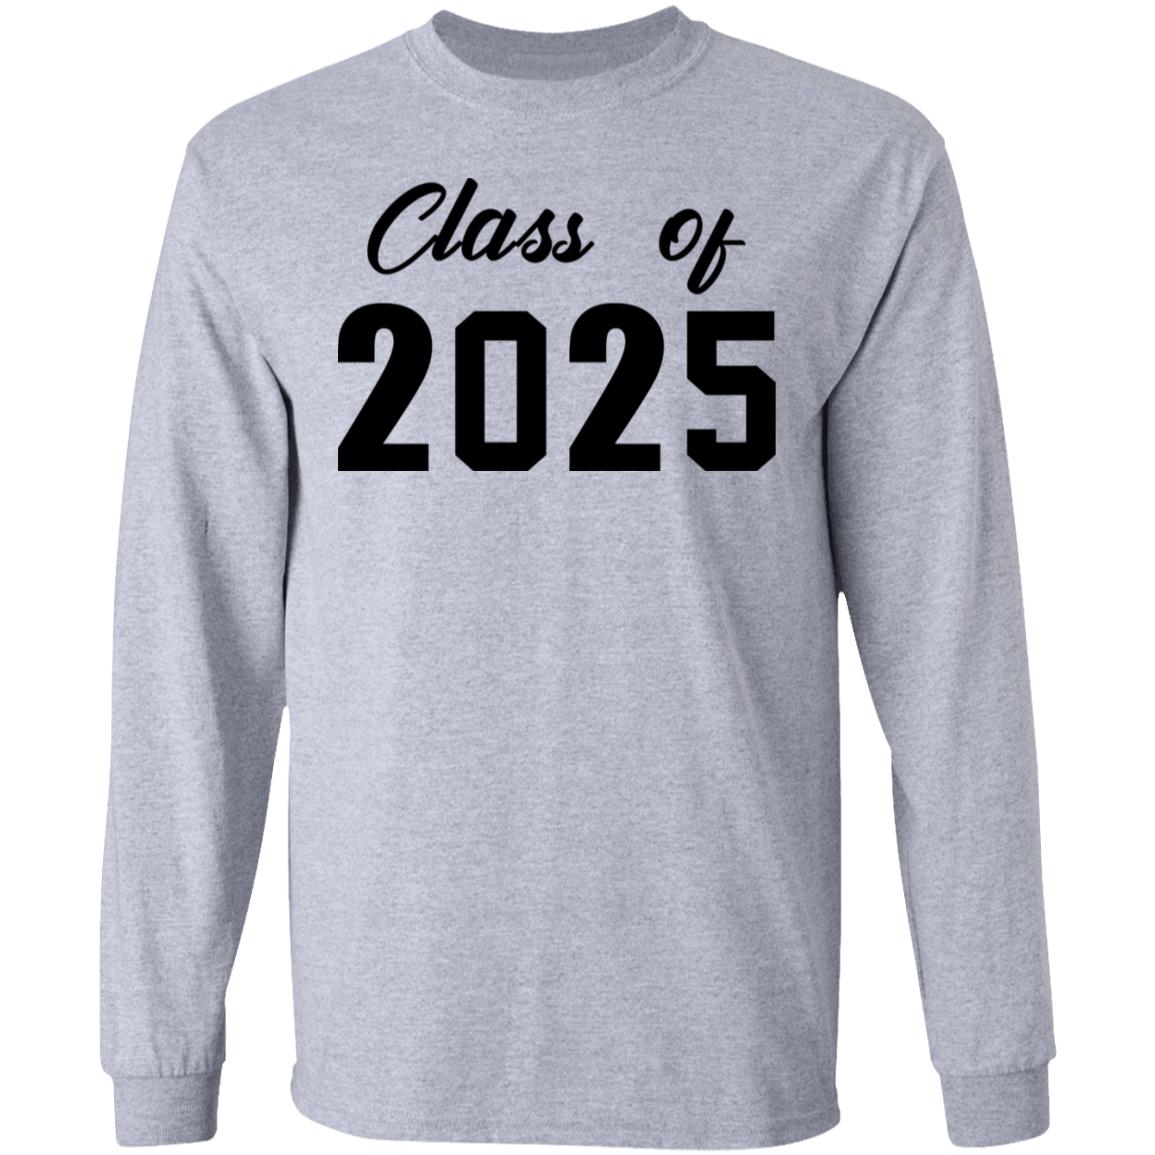 Class of 2025 shirt Rockatee